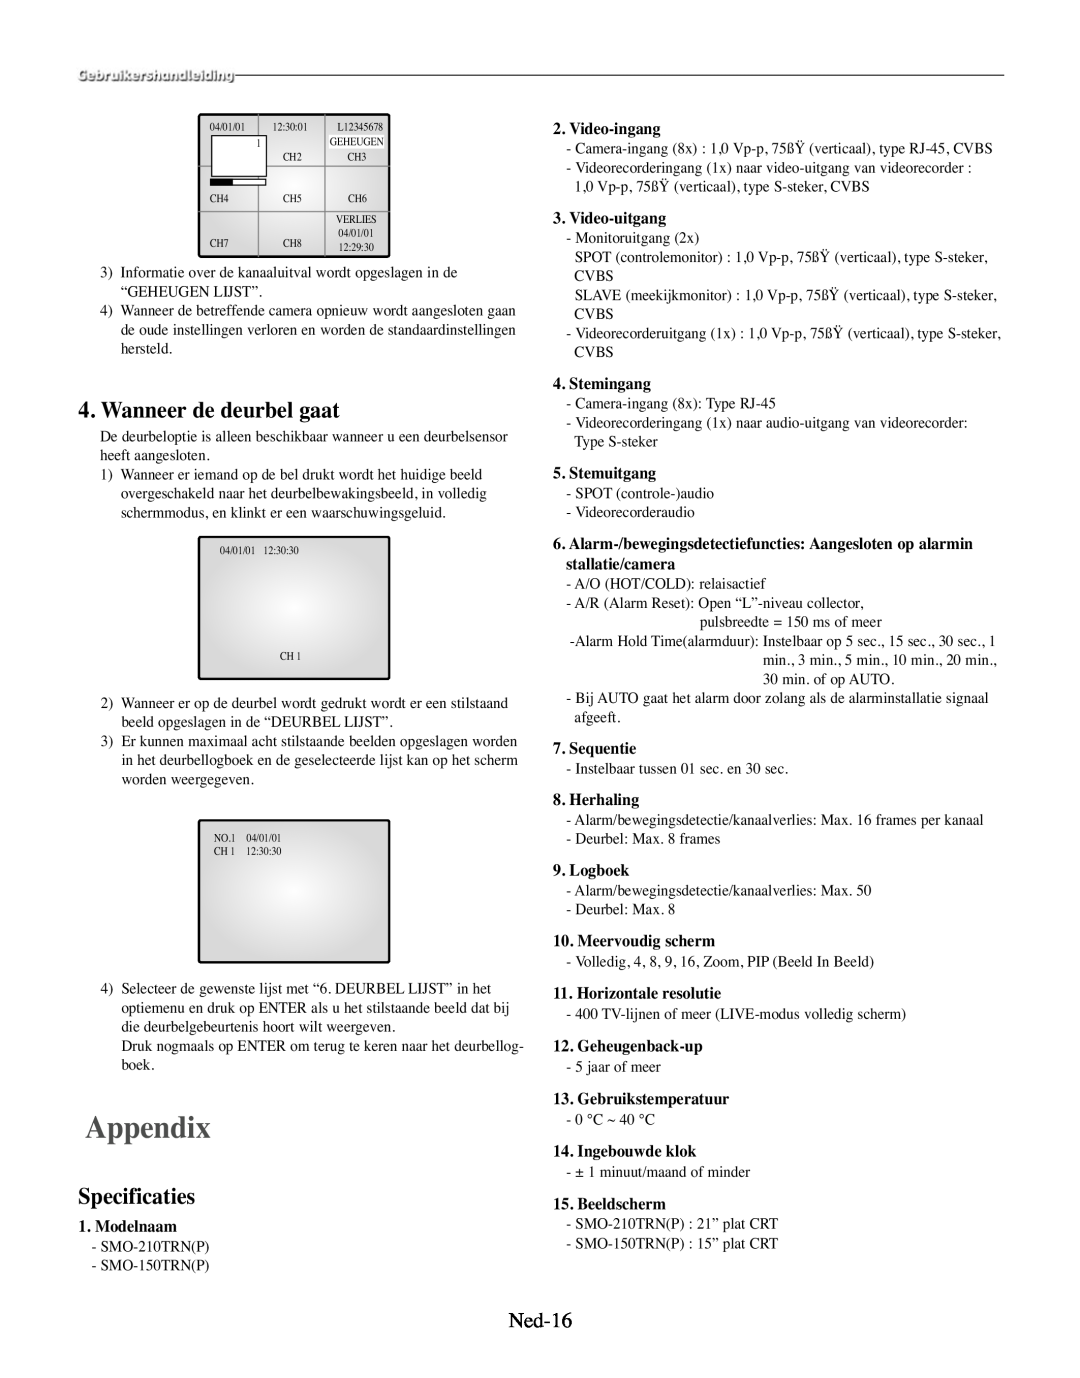 Samsung SMO-210TRP, SMO-210MP/UMG manual Wanneer de deurbel gaat, Specificaties, Appendix, Ned-16 